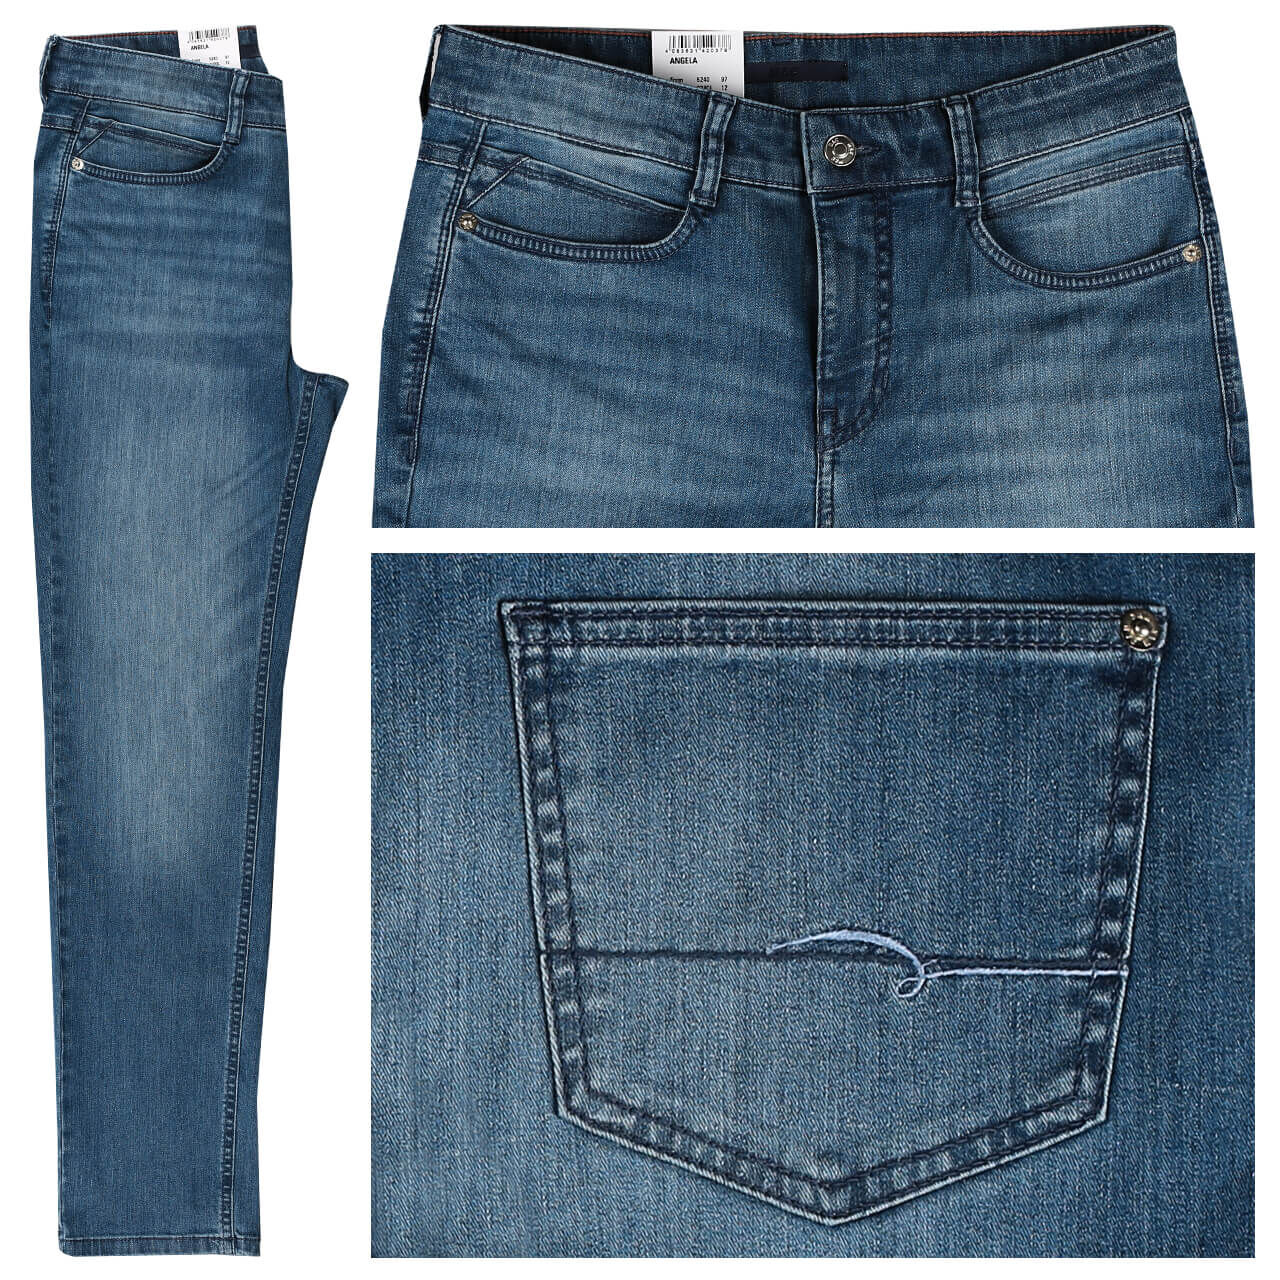 Toronto jeans - Die besten Toronto jeans unter die Lupe genommen